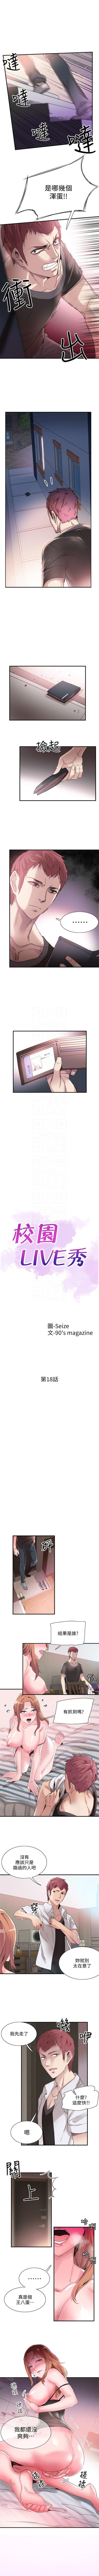 校园live秀 1-35 中文翻译（更新中） 125